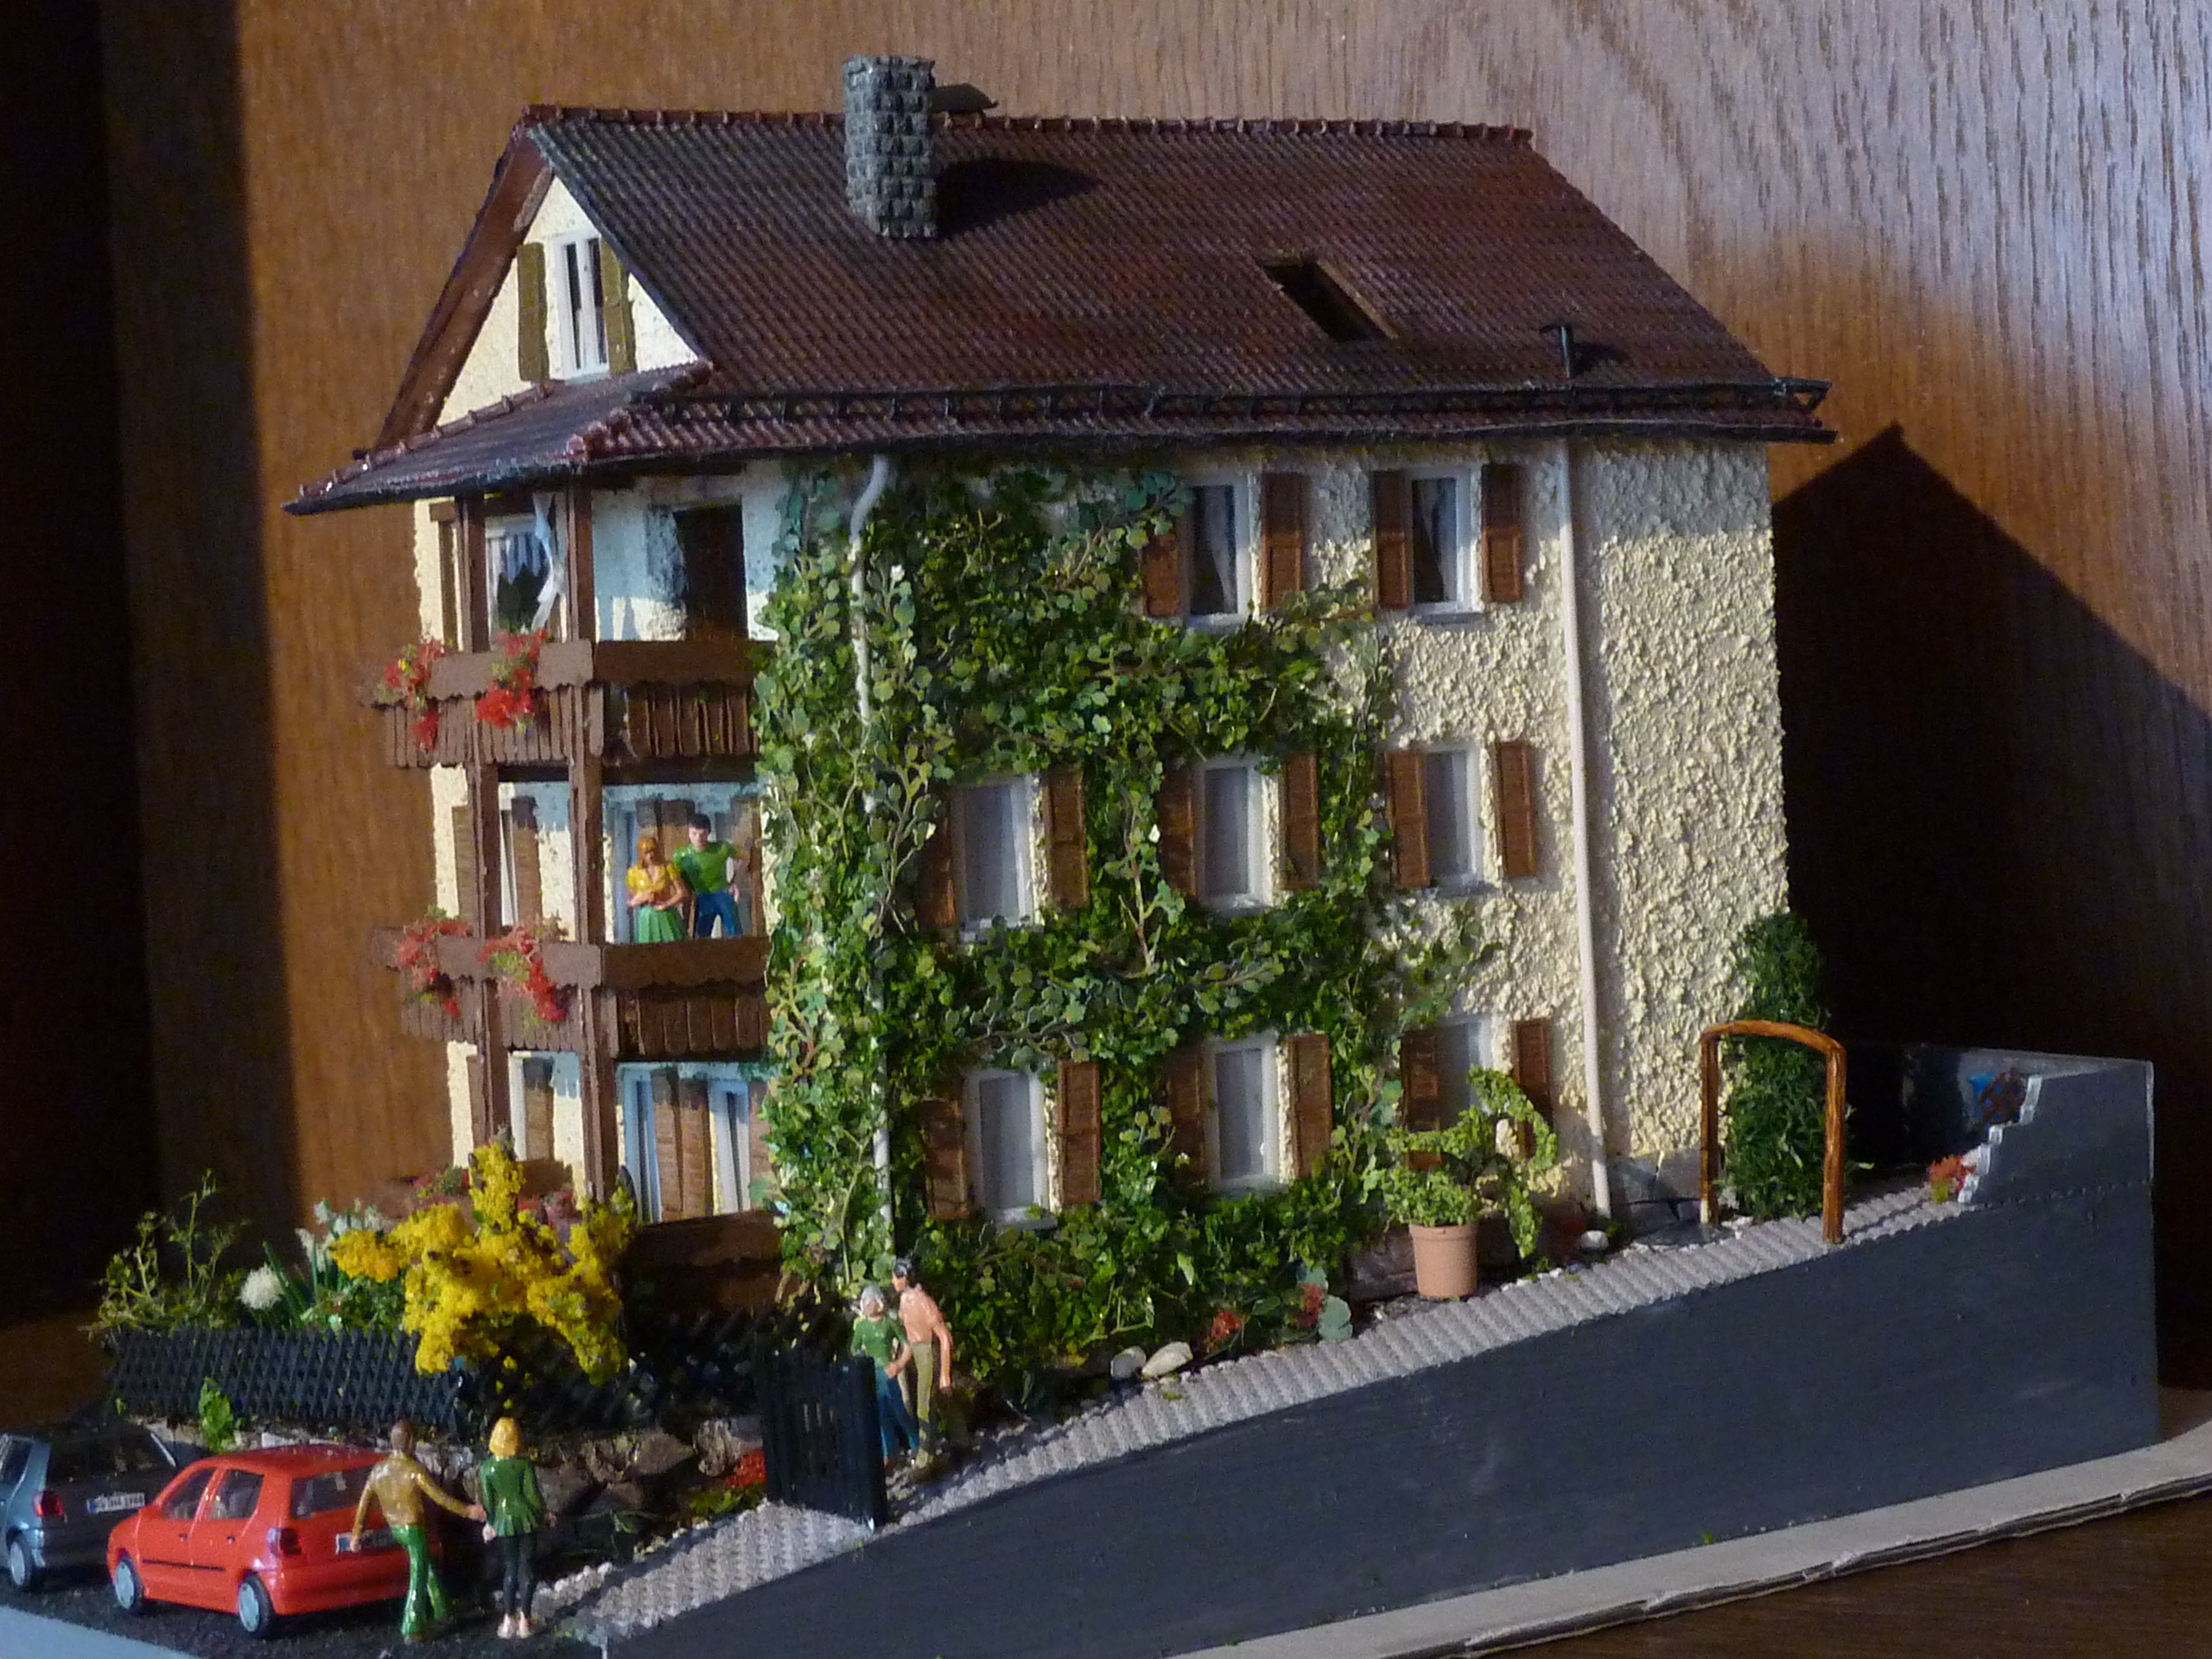 House model